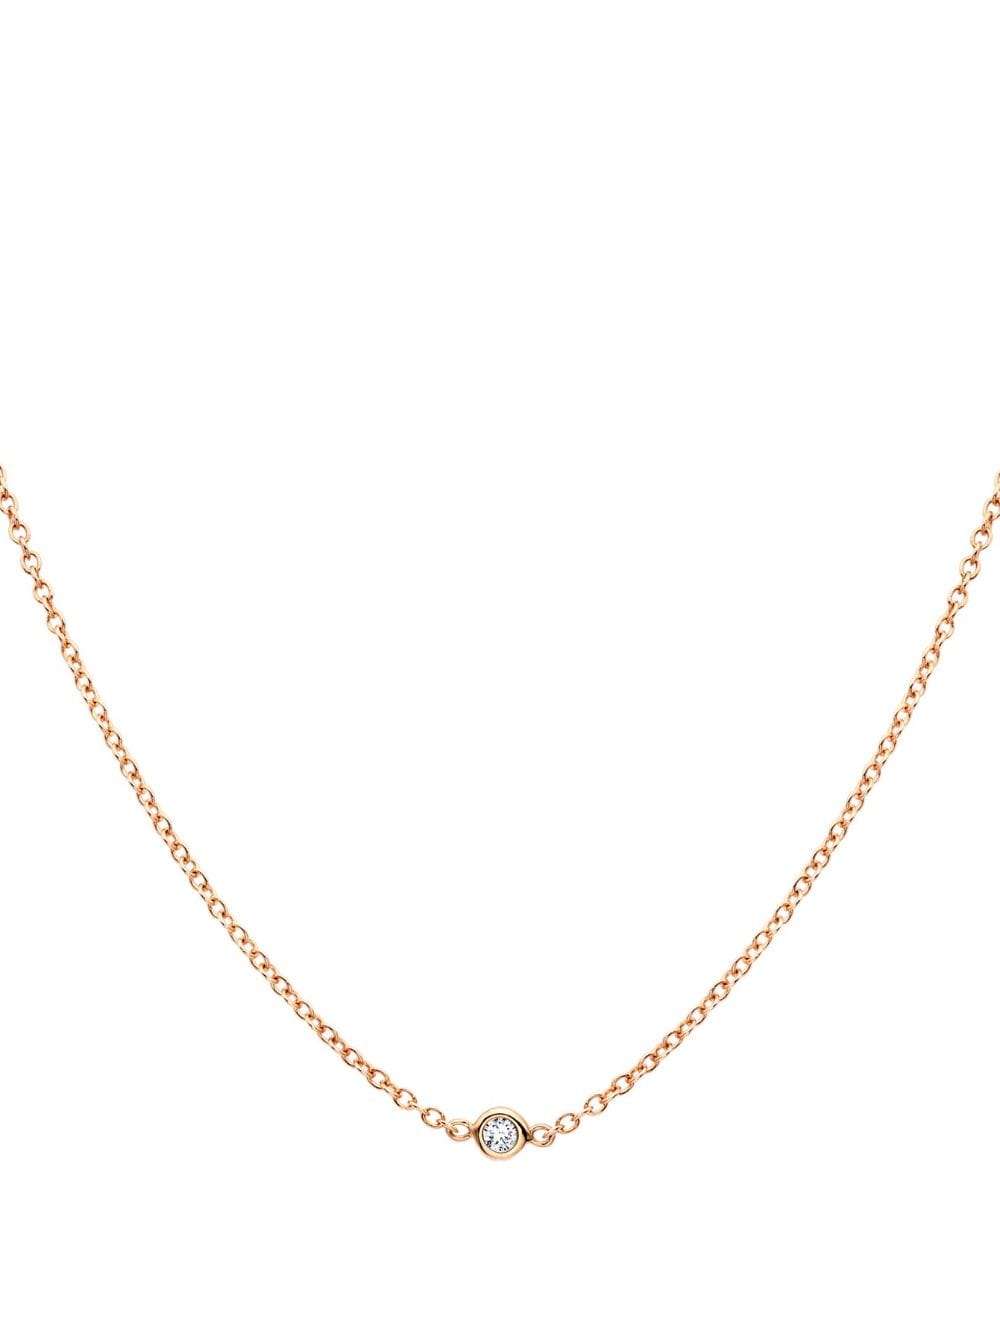 Shop Pragnell 18kt Rose Gold Sundance Diamond Necklace